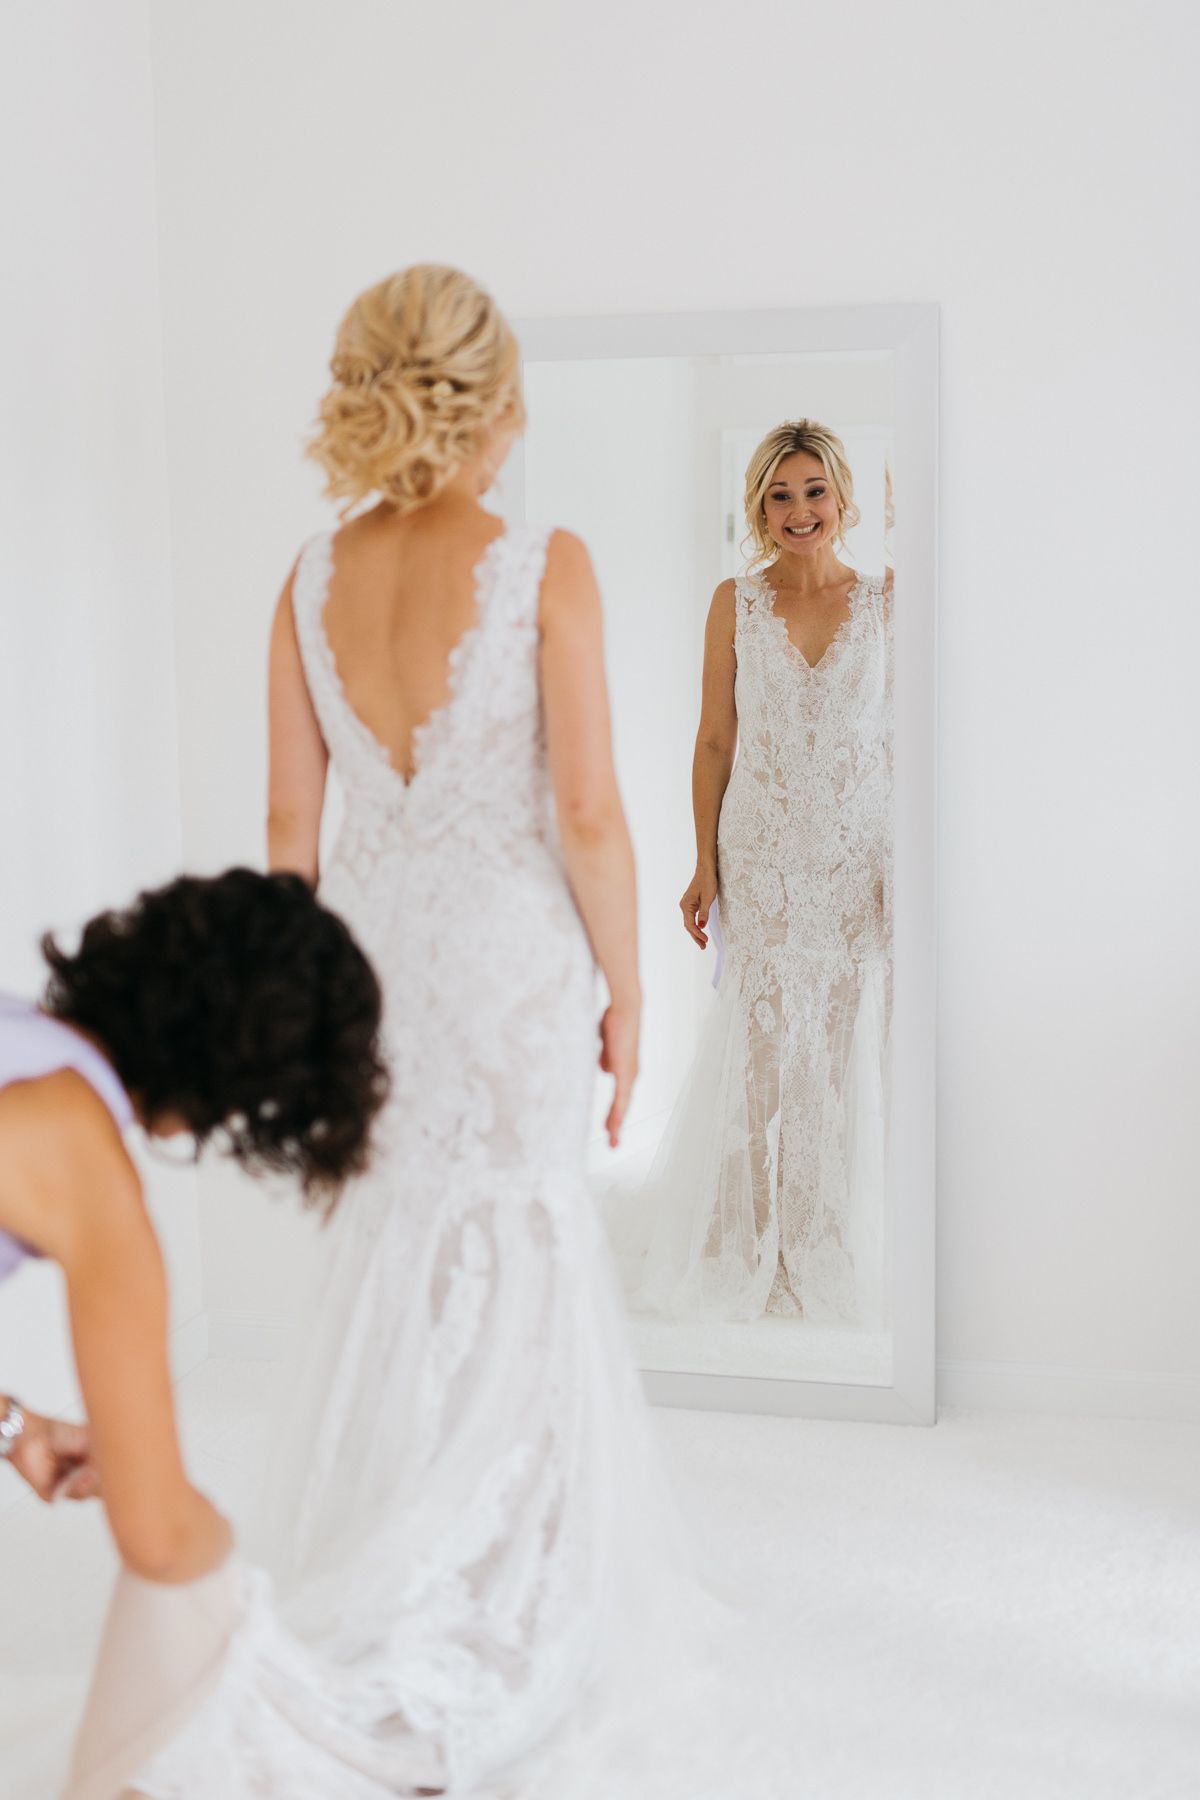 Die Braut trägt ein weißes Hochzeitskleid und betrachtet sich glücklich im Spiegel.